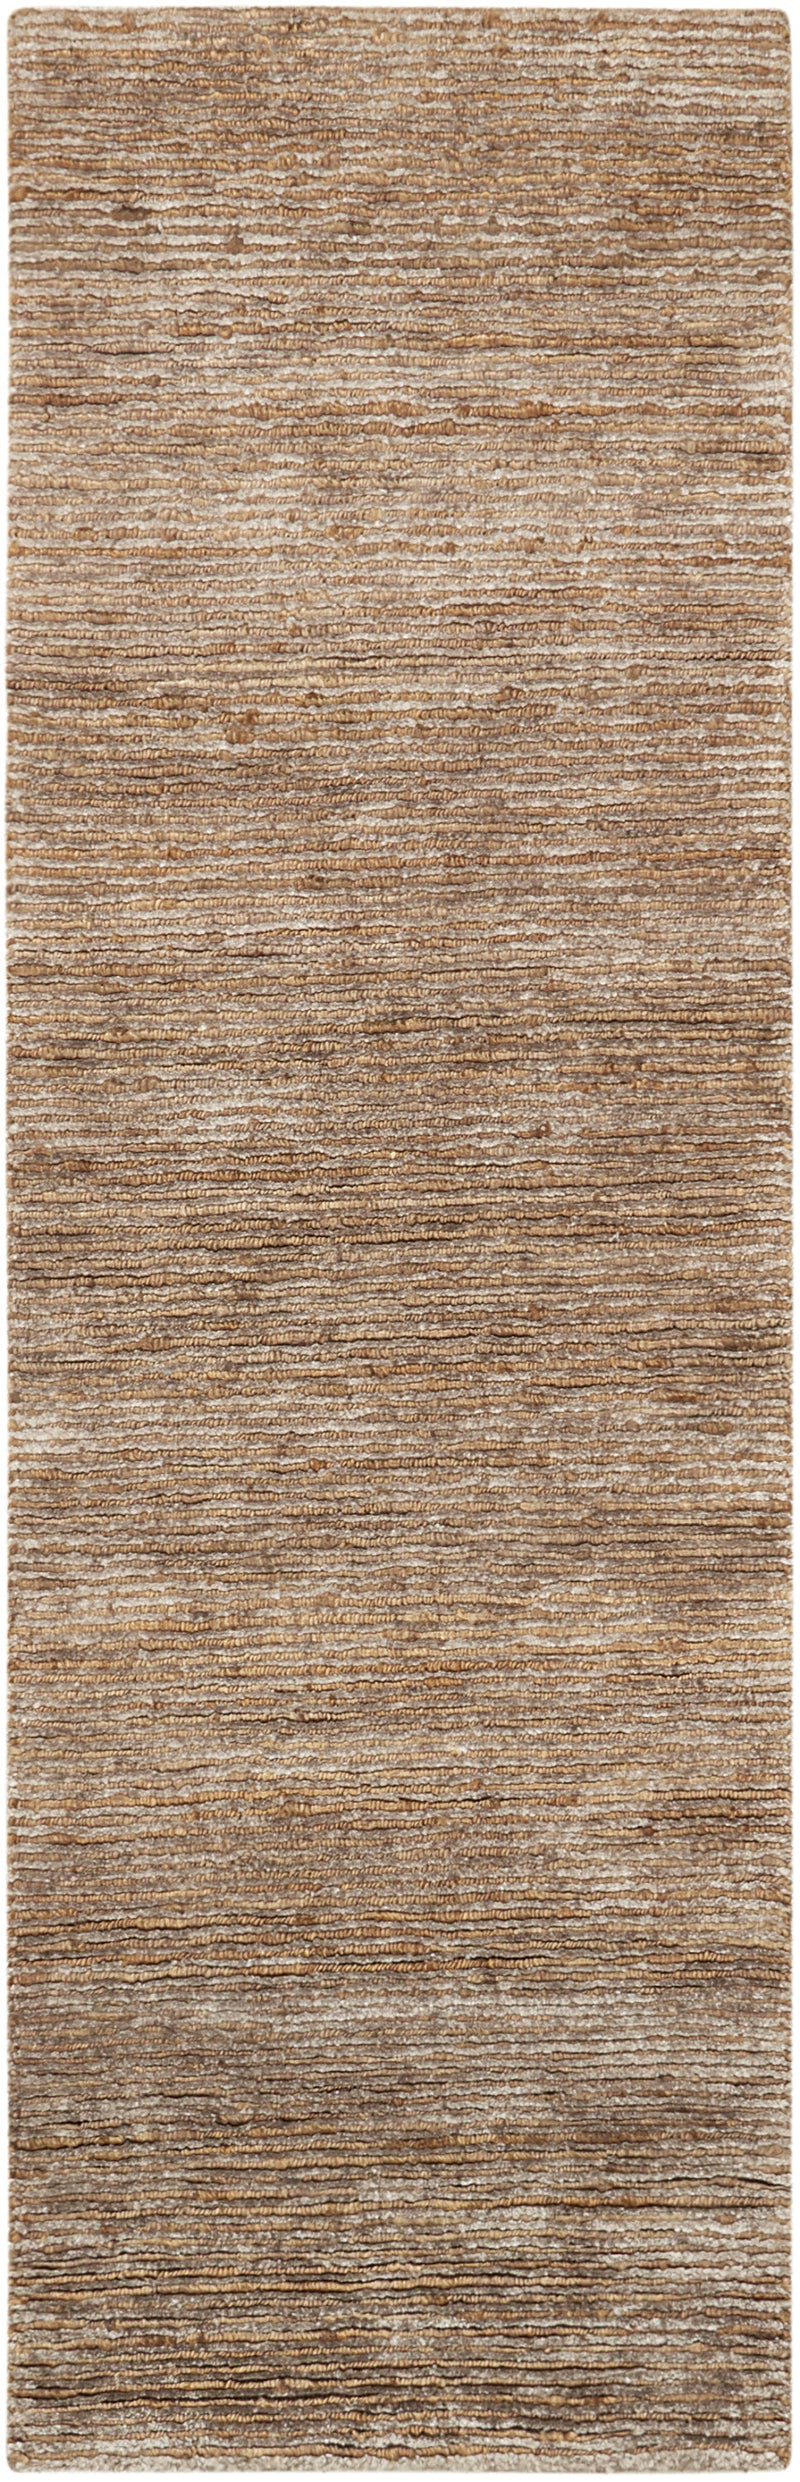 media image for mesa handmade amber rug by nourison 99446244871 redo 2 231